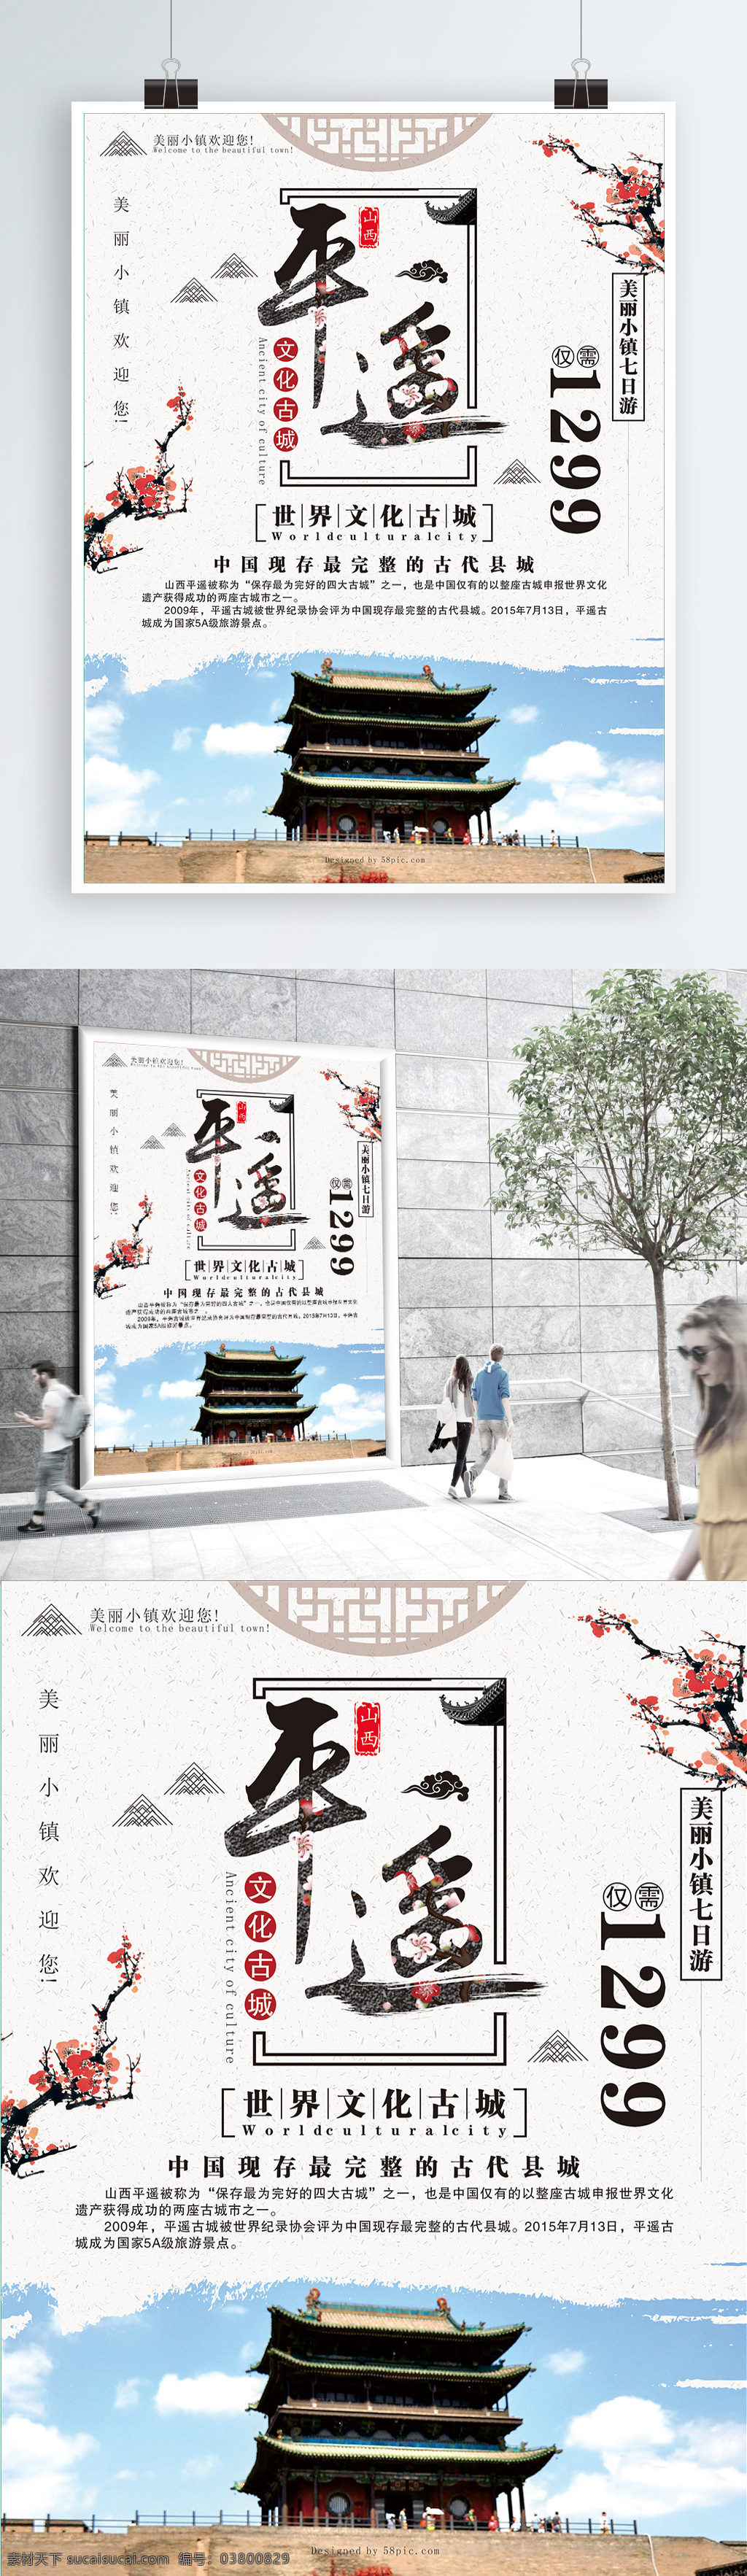 中国 风 文化 古城 平遥古城 旅游 海报 旅游海报 旅游促销海报